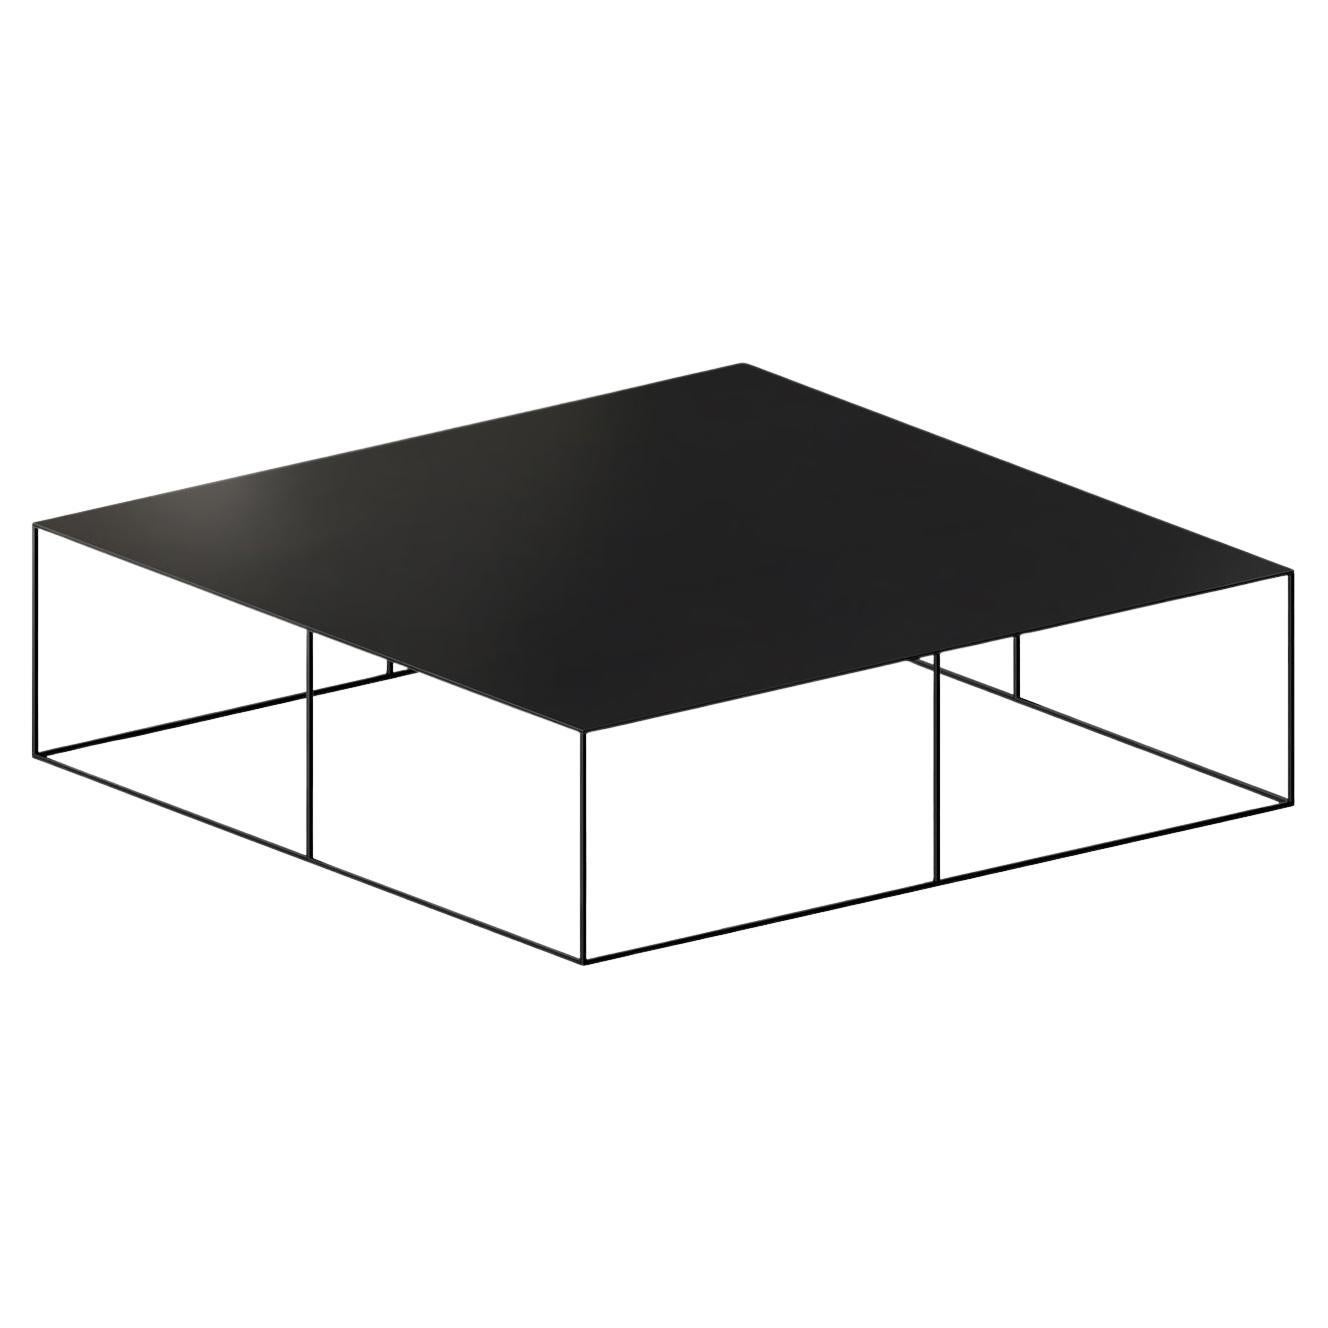 Table basse carrée noire en fer forgé mince de Maurizio Peregalli